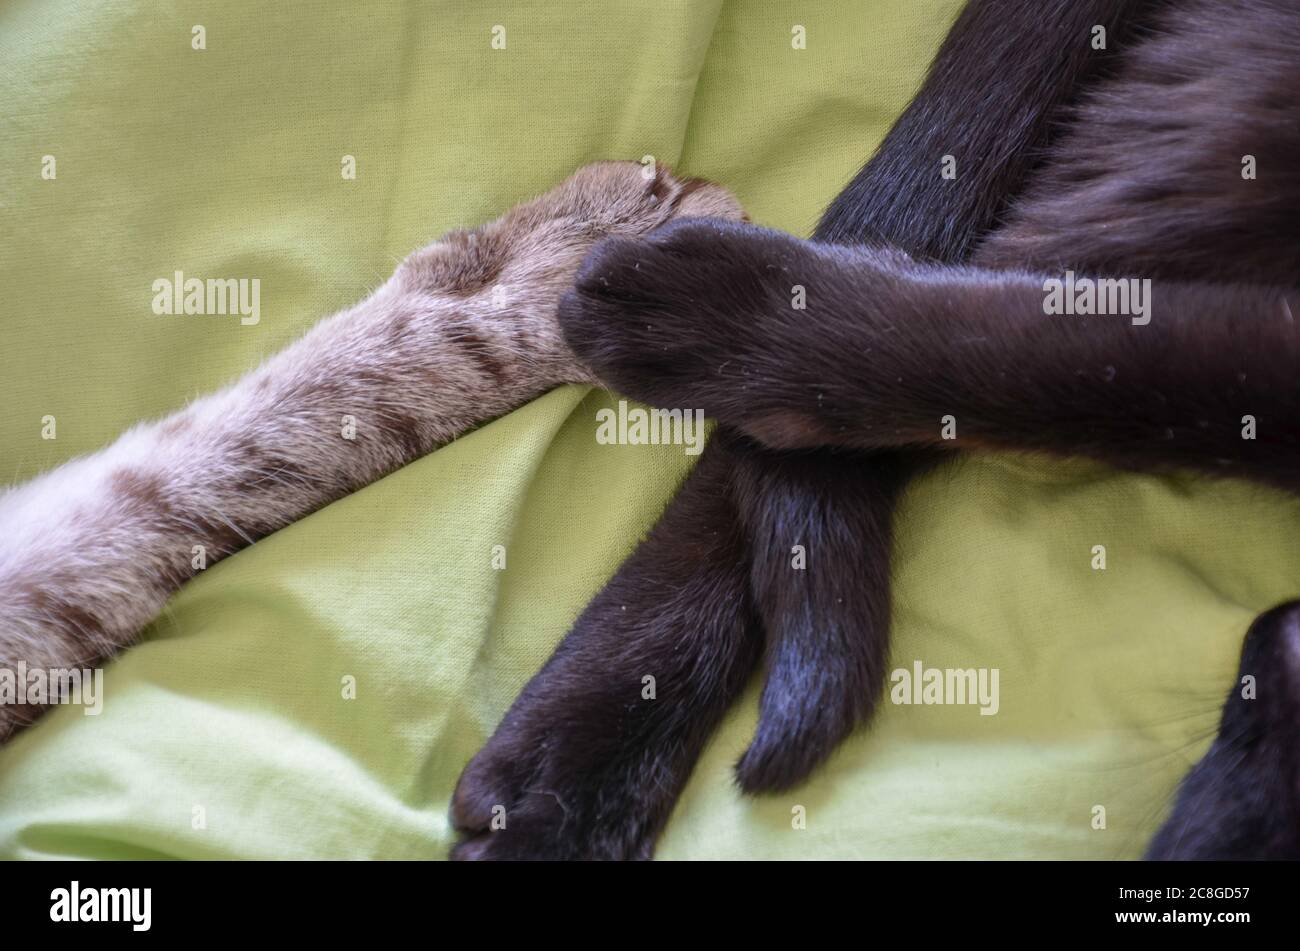 gros plan sur deux pattes de chat se touchant (chat noir et tabby) avec fond vert Banque D'Images